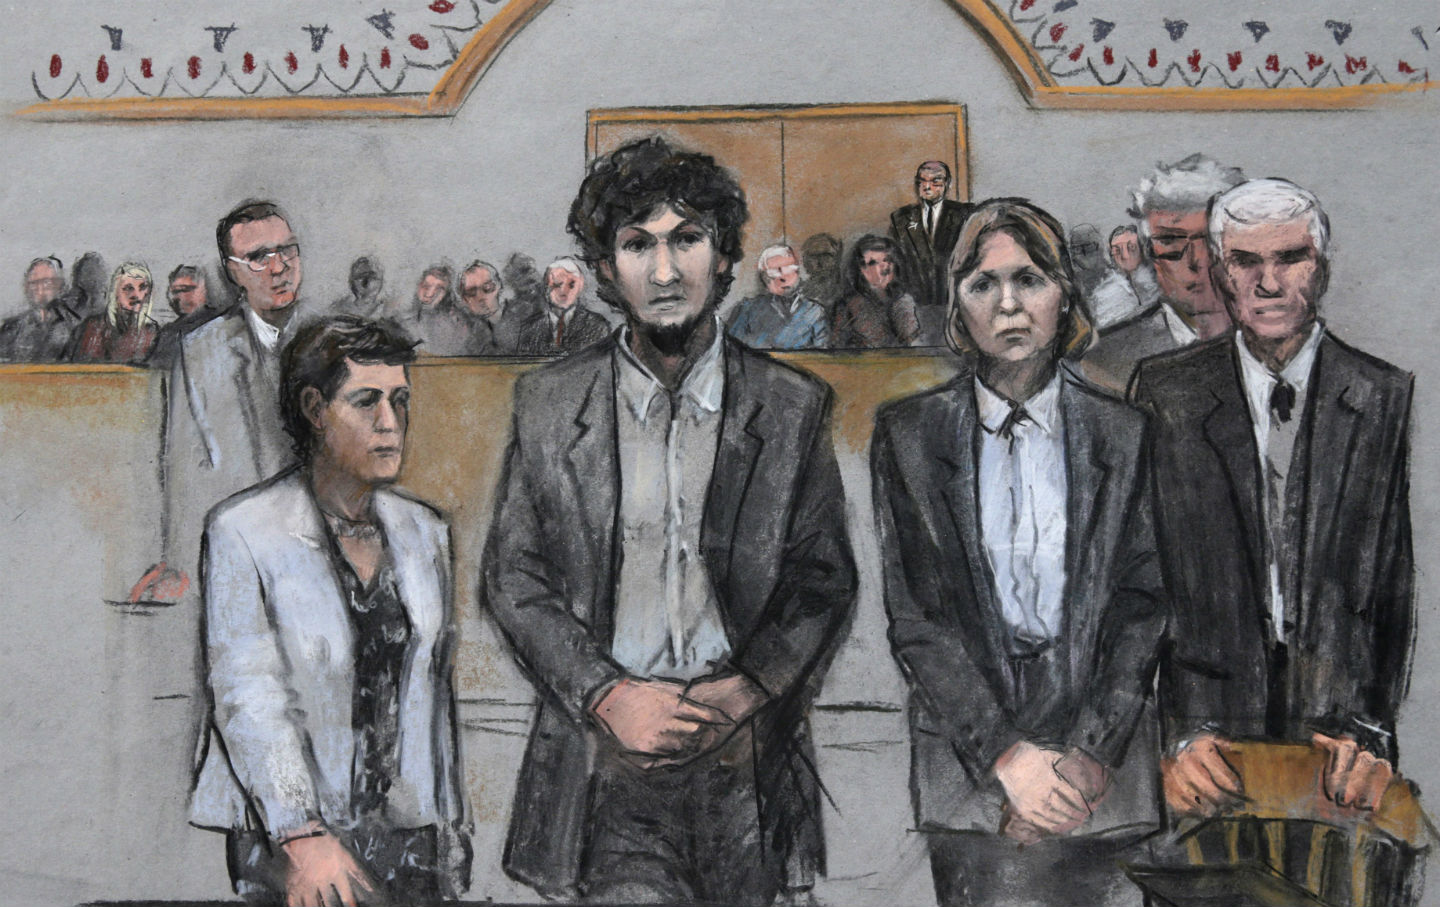 Dzhokhar Tsarnaev and the End of Innocence